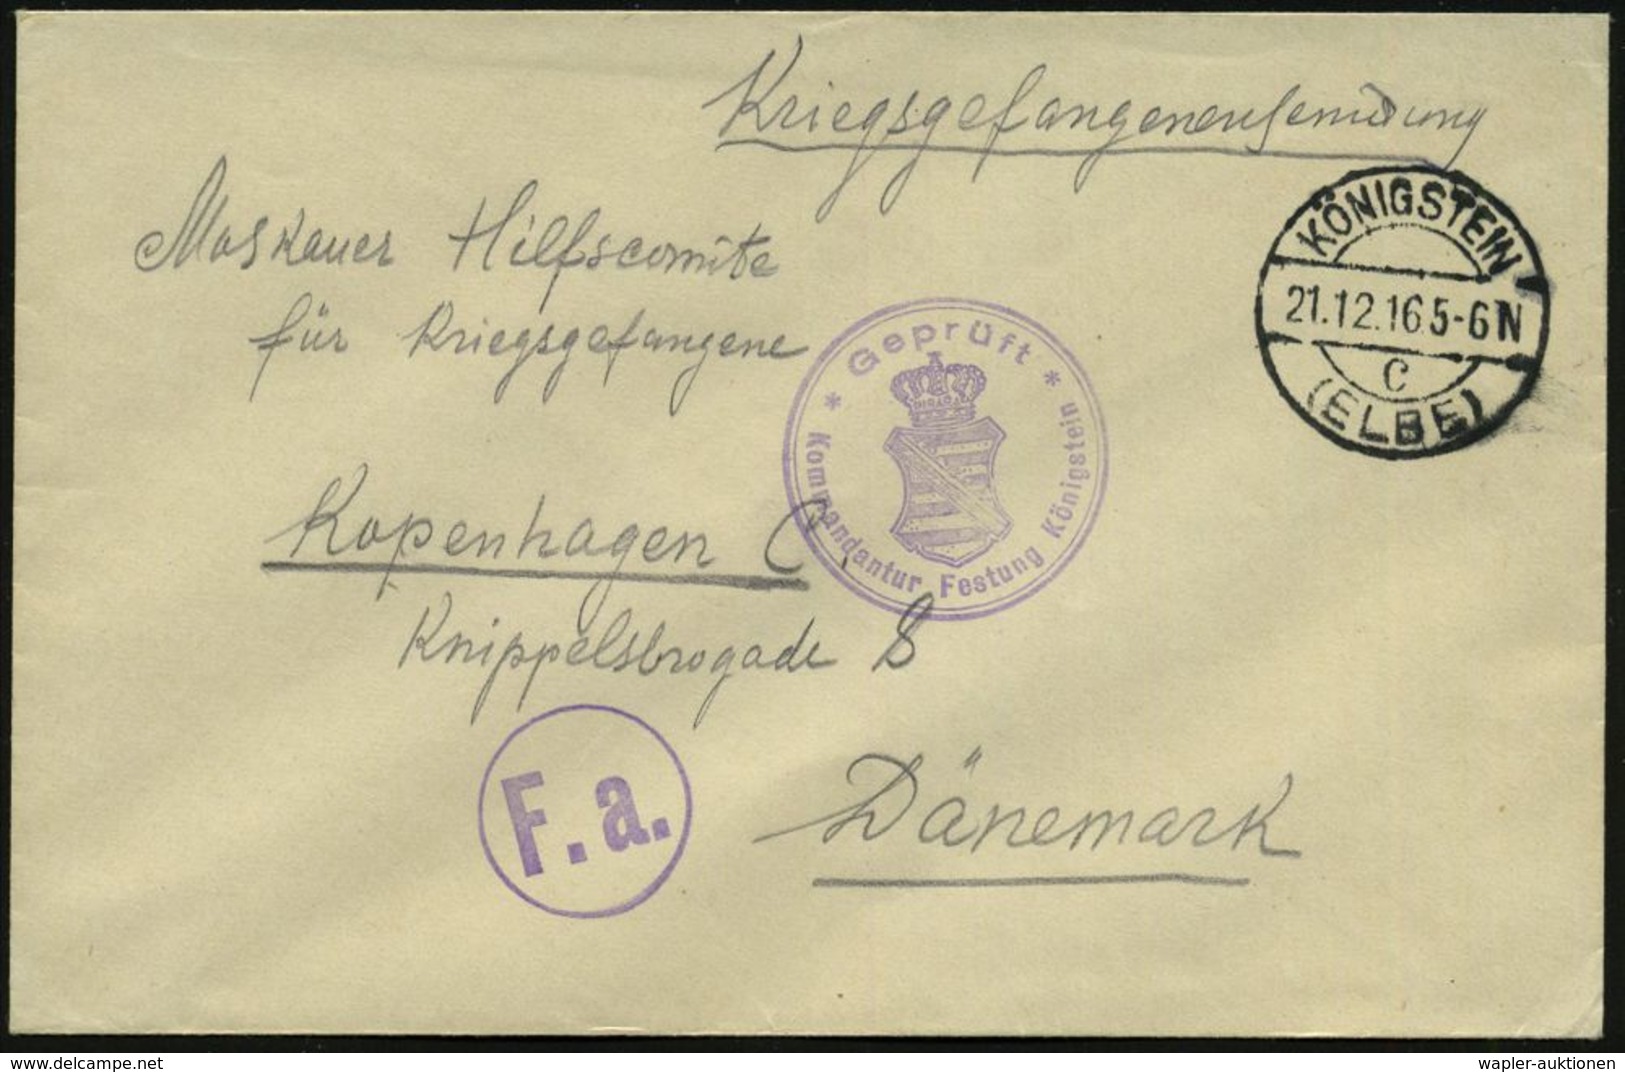 KÖNIGSTEIN/ C/ (ELBE) 1916 (Dez.) 1K-Brücke + Viol. Zensur-2K: Geprüft/ Kommandantur Festung Königstein (sächs. Wappen)  - Croce Rossa